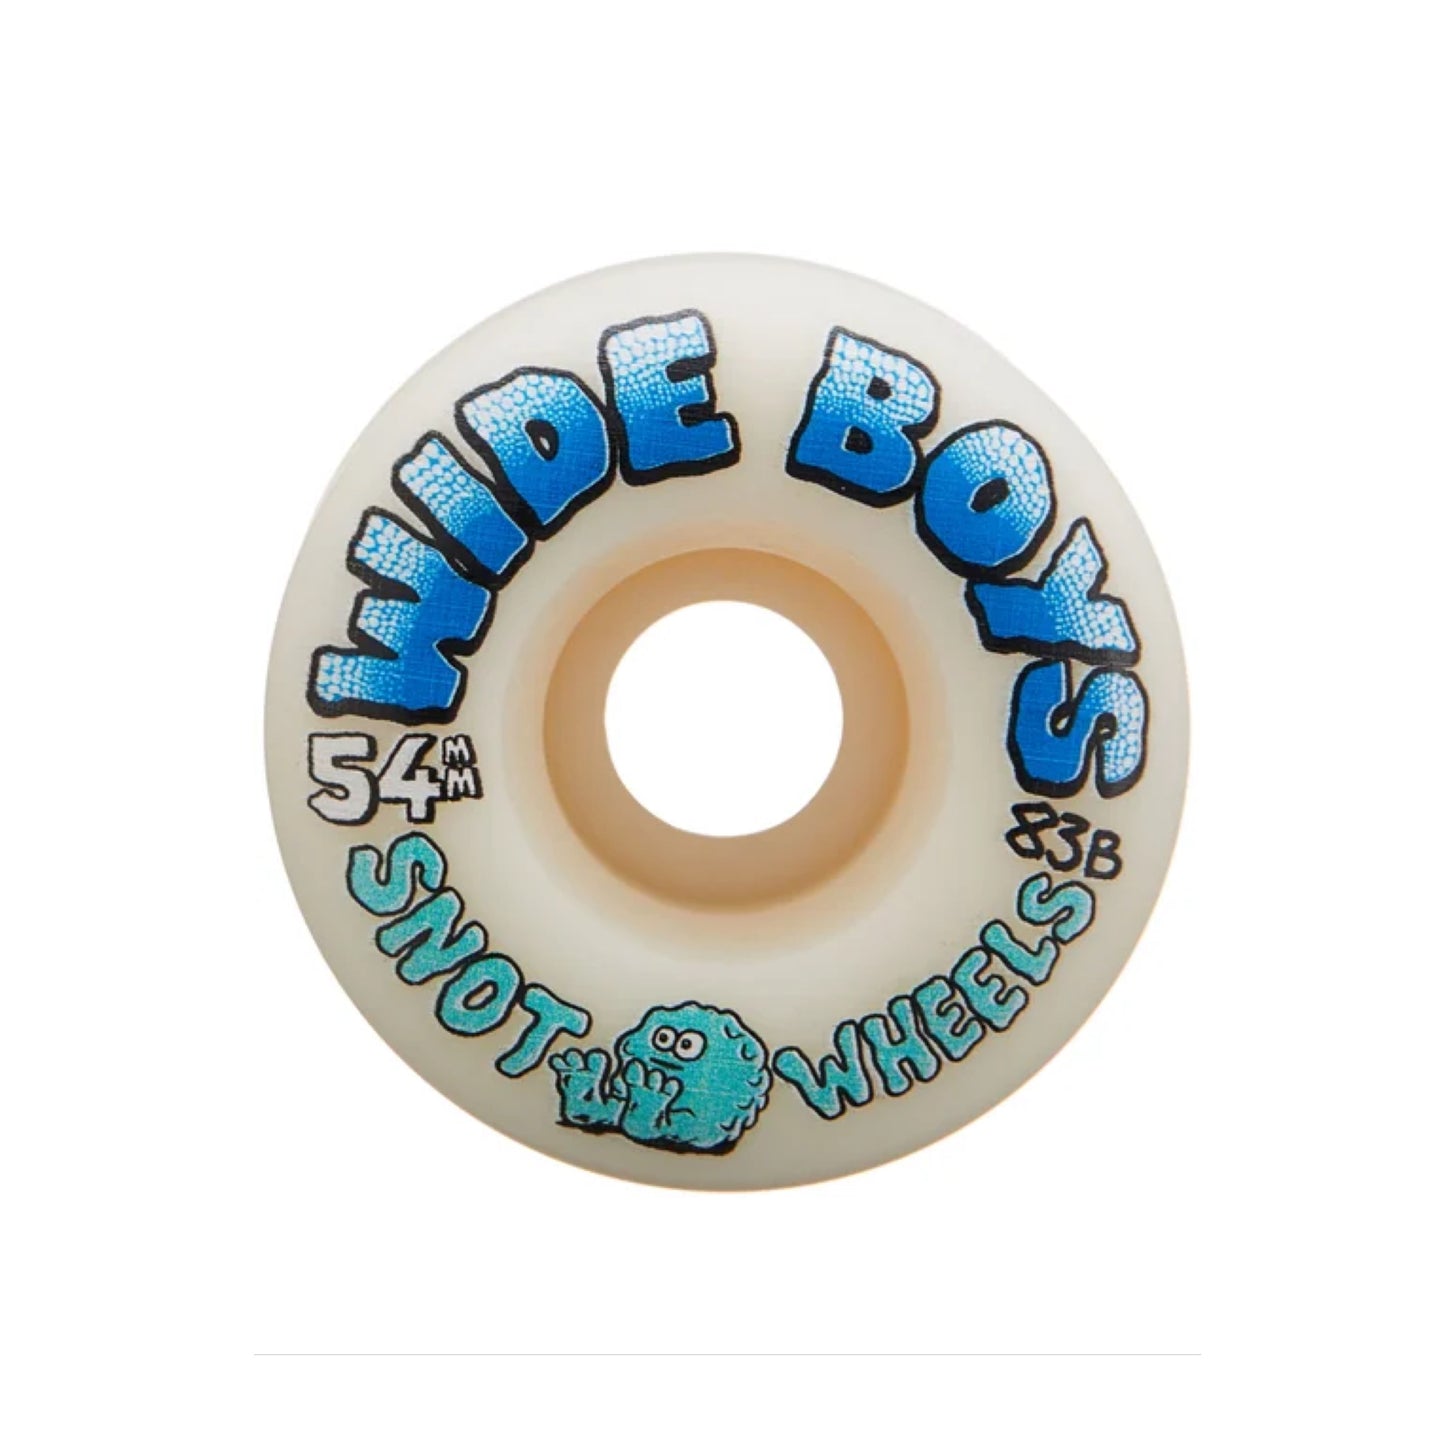 Snot Wide Boys 54mm Skateboard Wheels